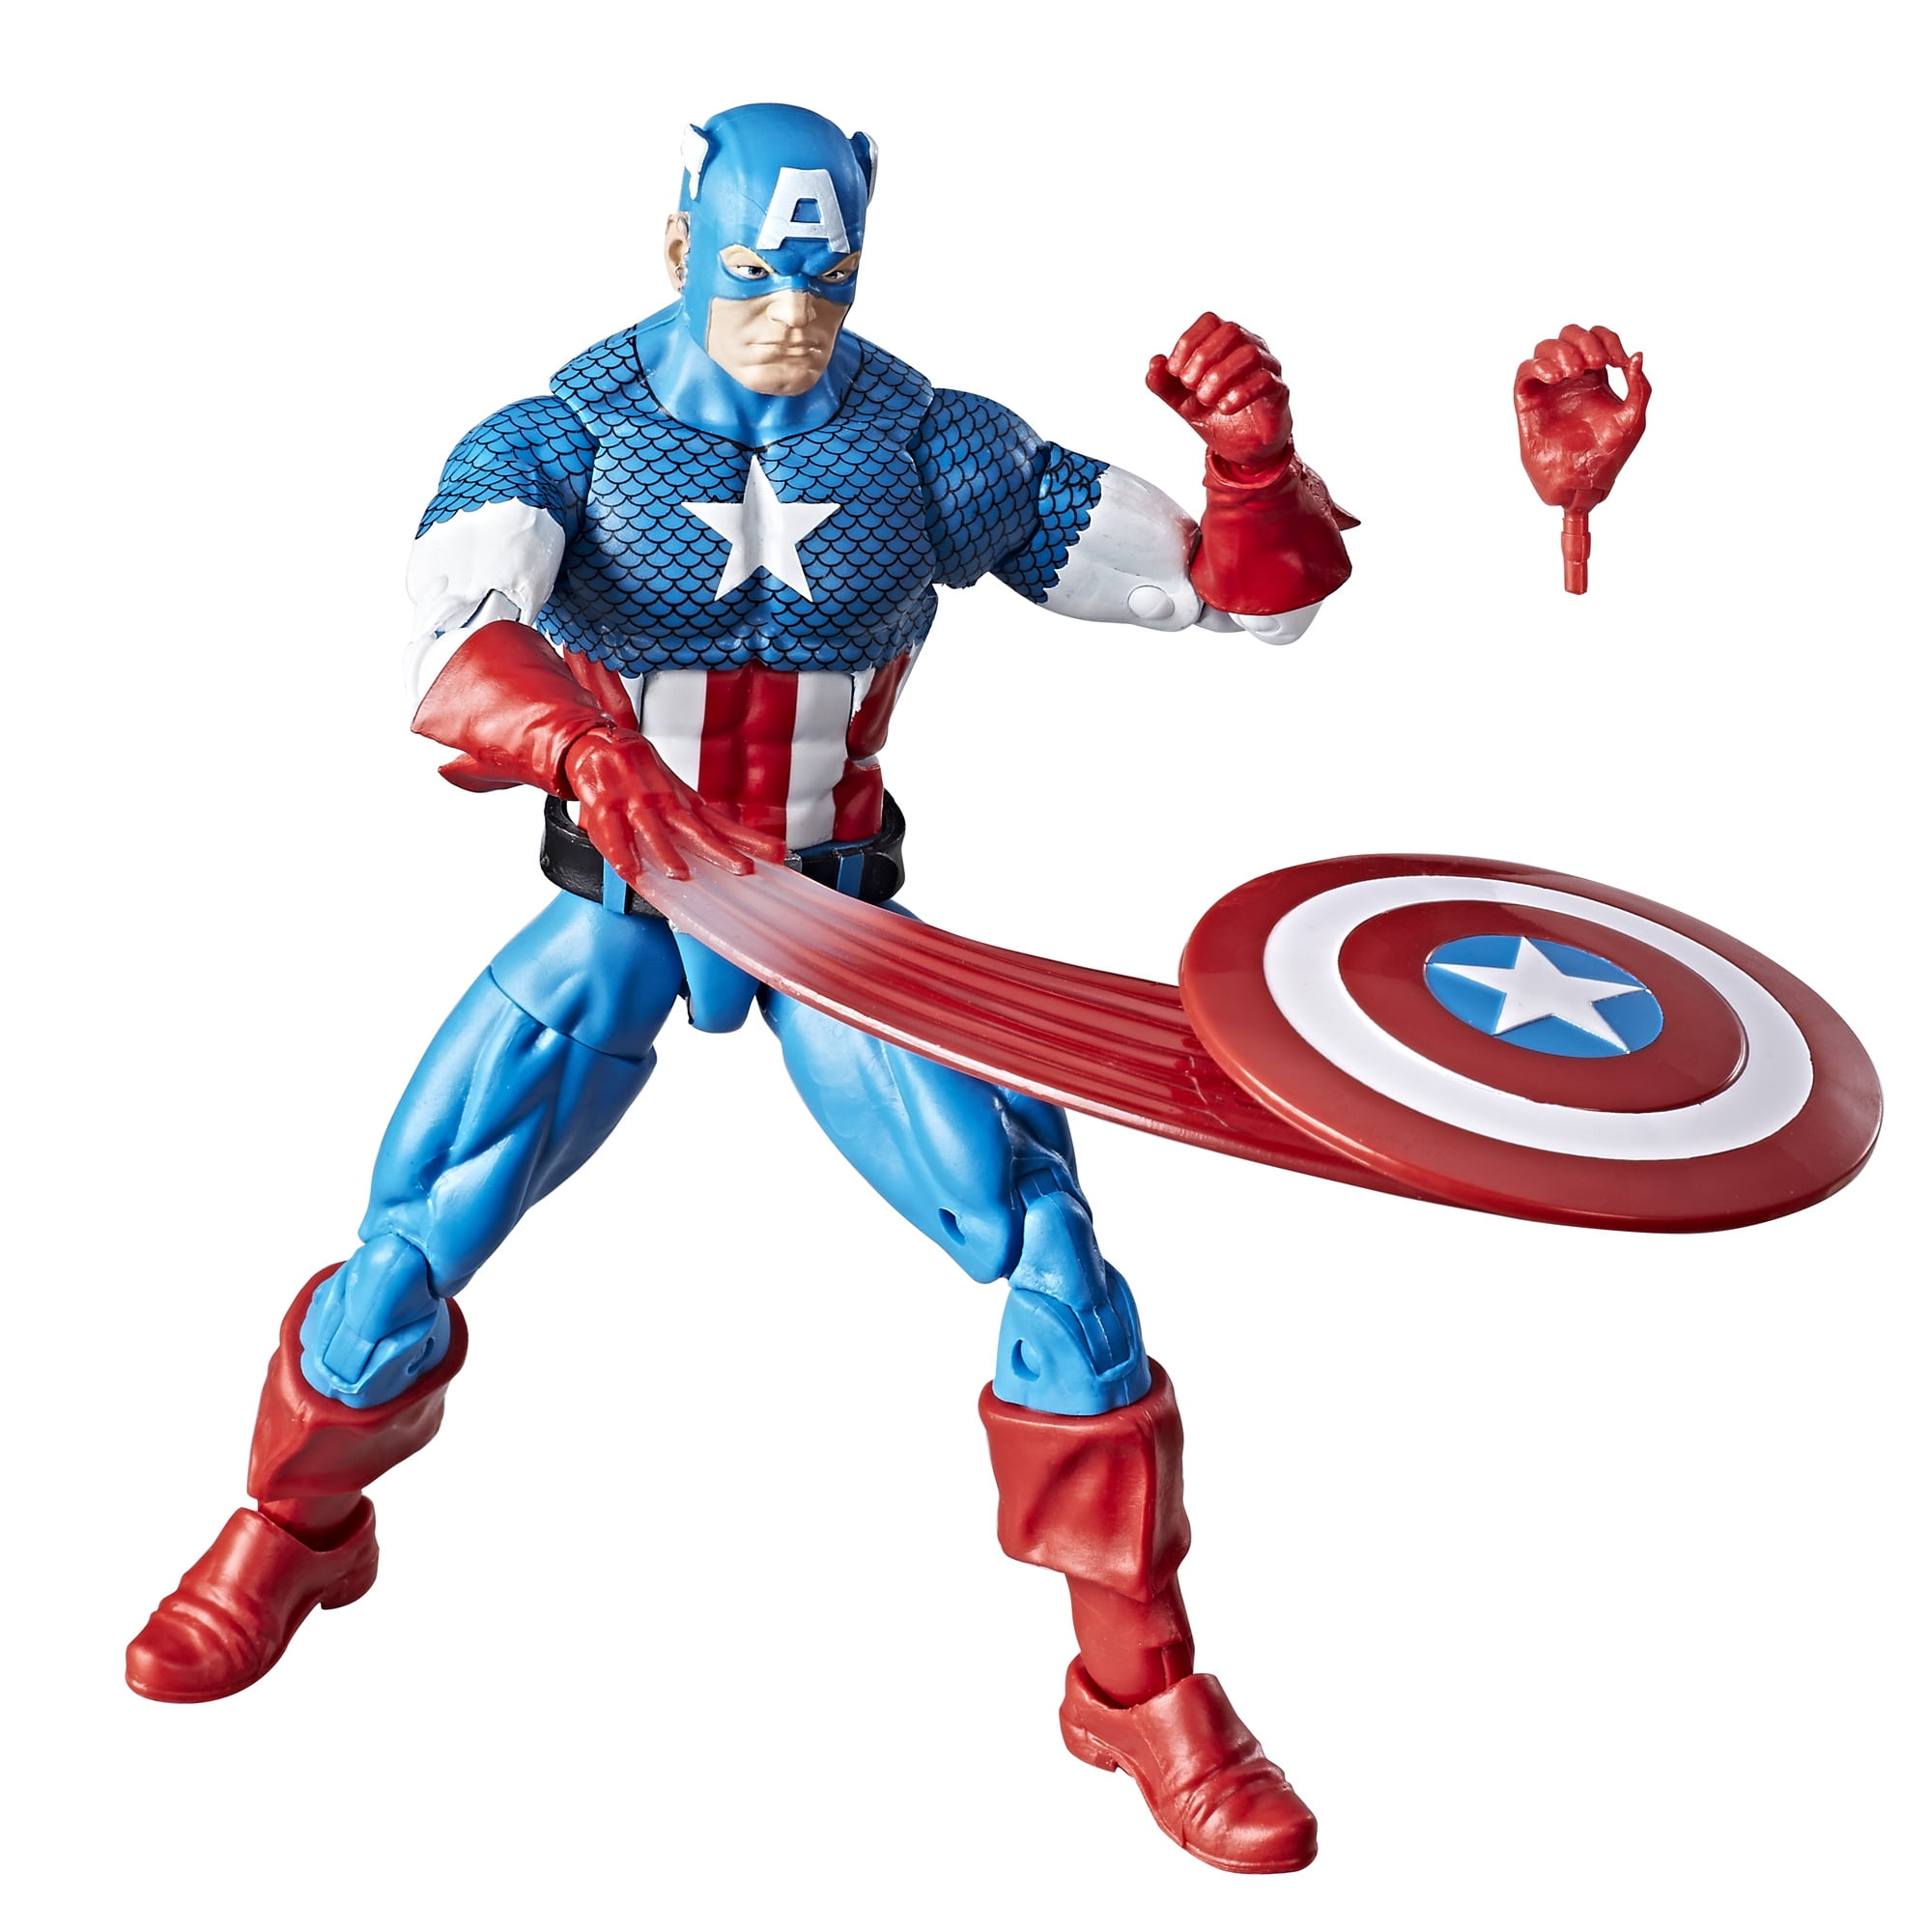 Marvel's Avengers Mega Figurine Play Set – 16-Pc.